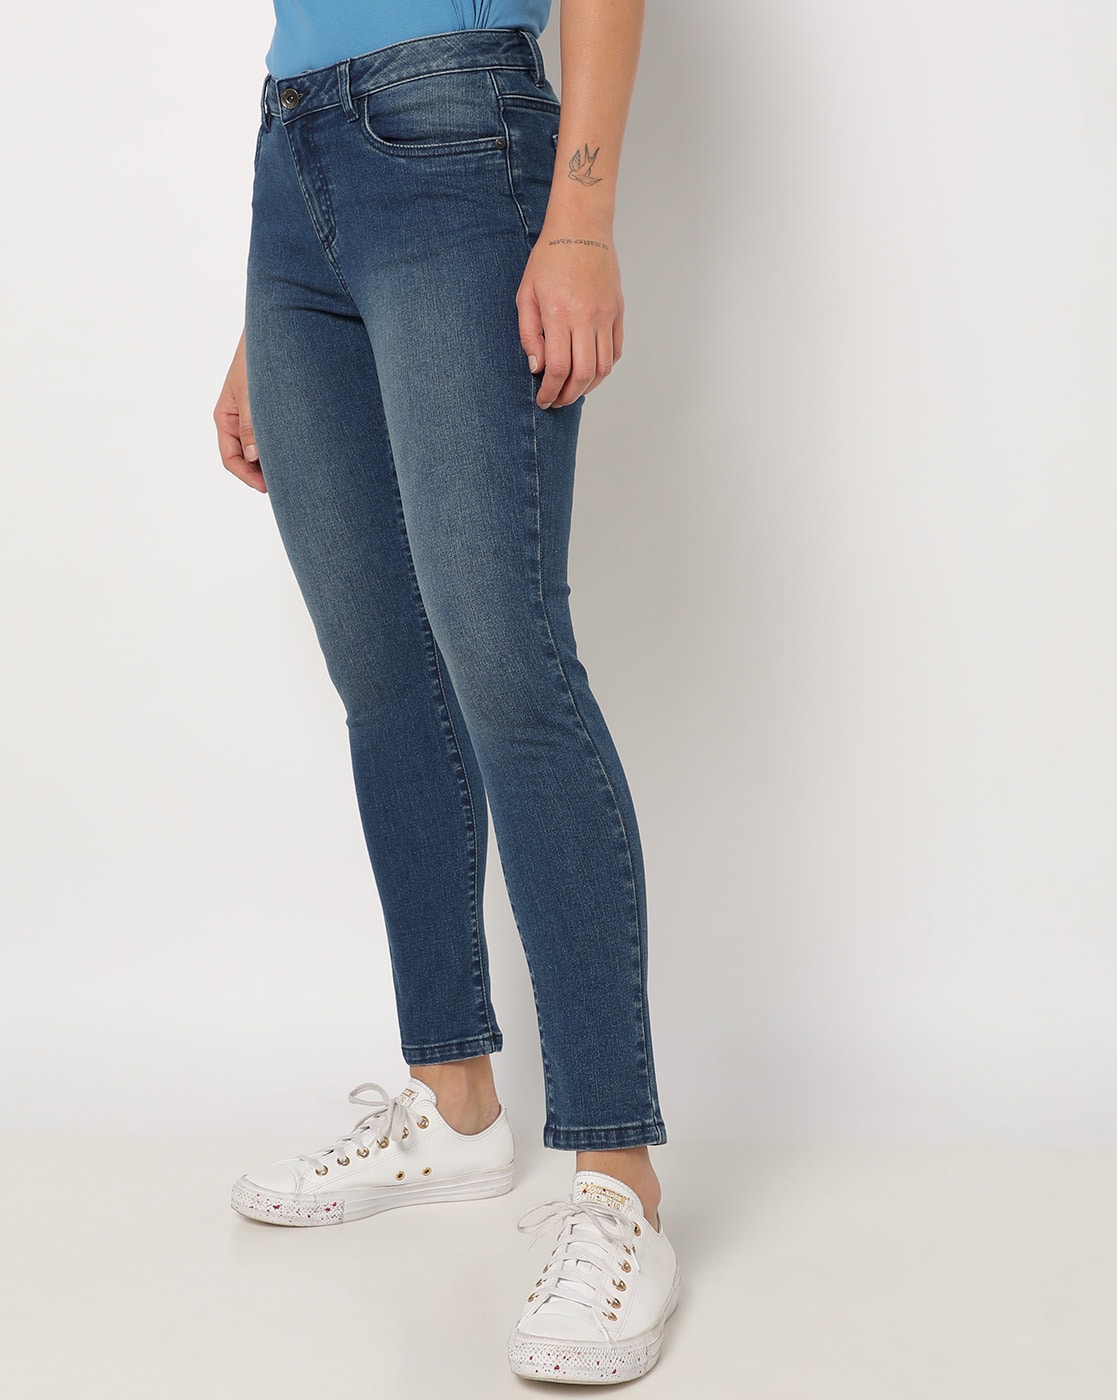 Buy Dark Blue Lycra Super Skinny Regular Length Jeans For Women-lmd.edu.vn